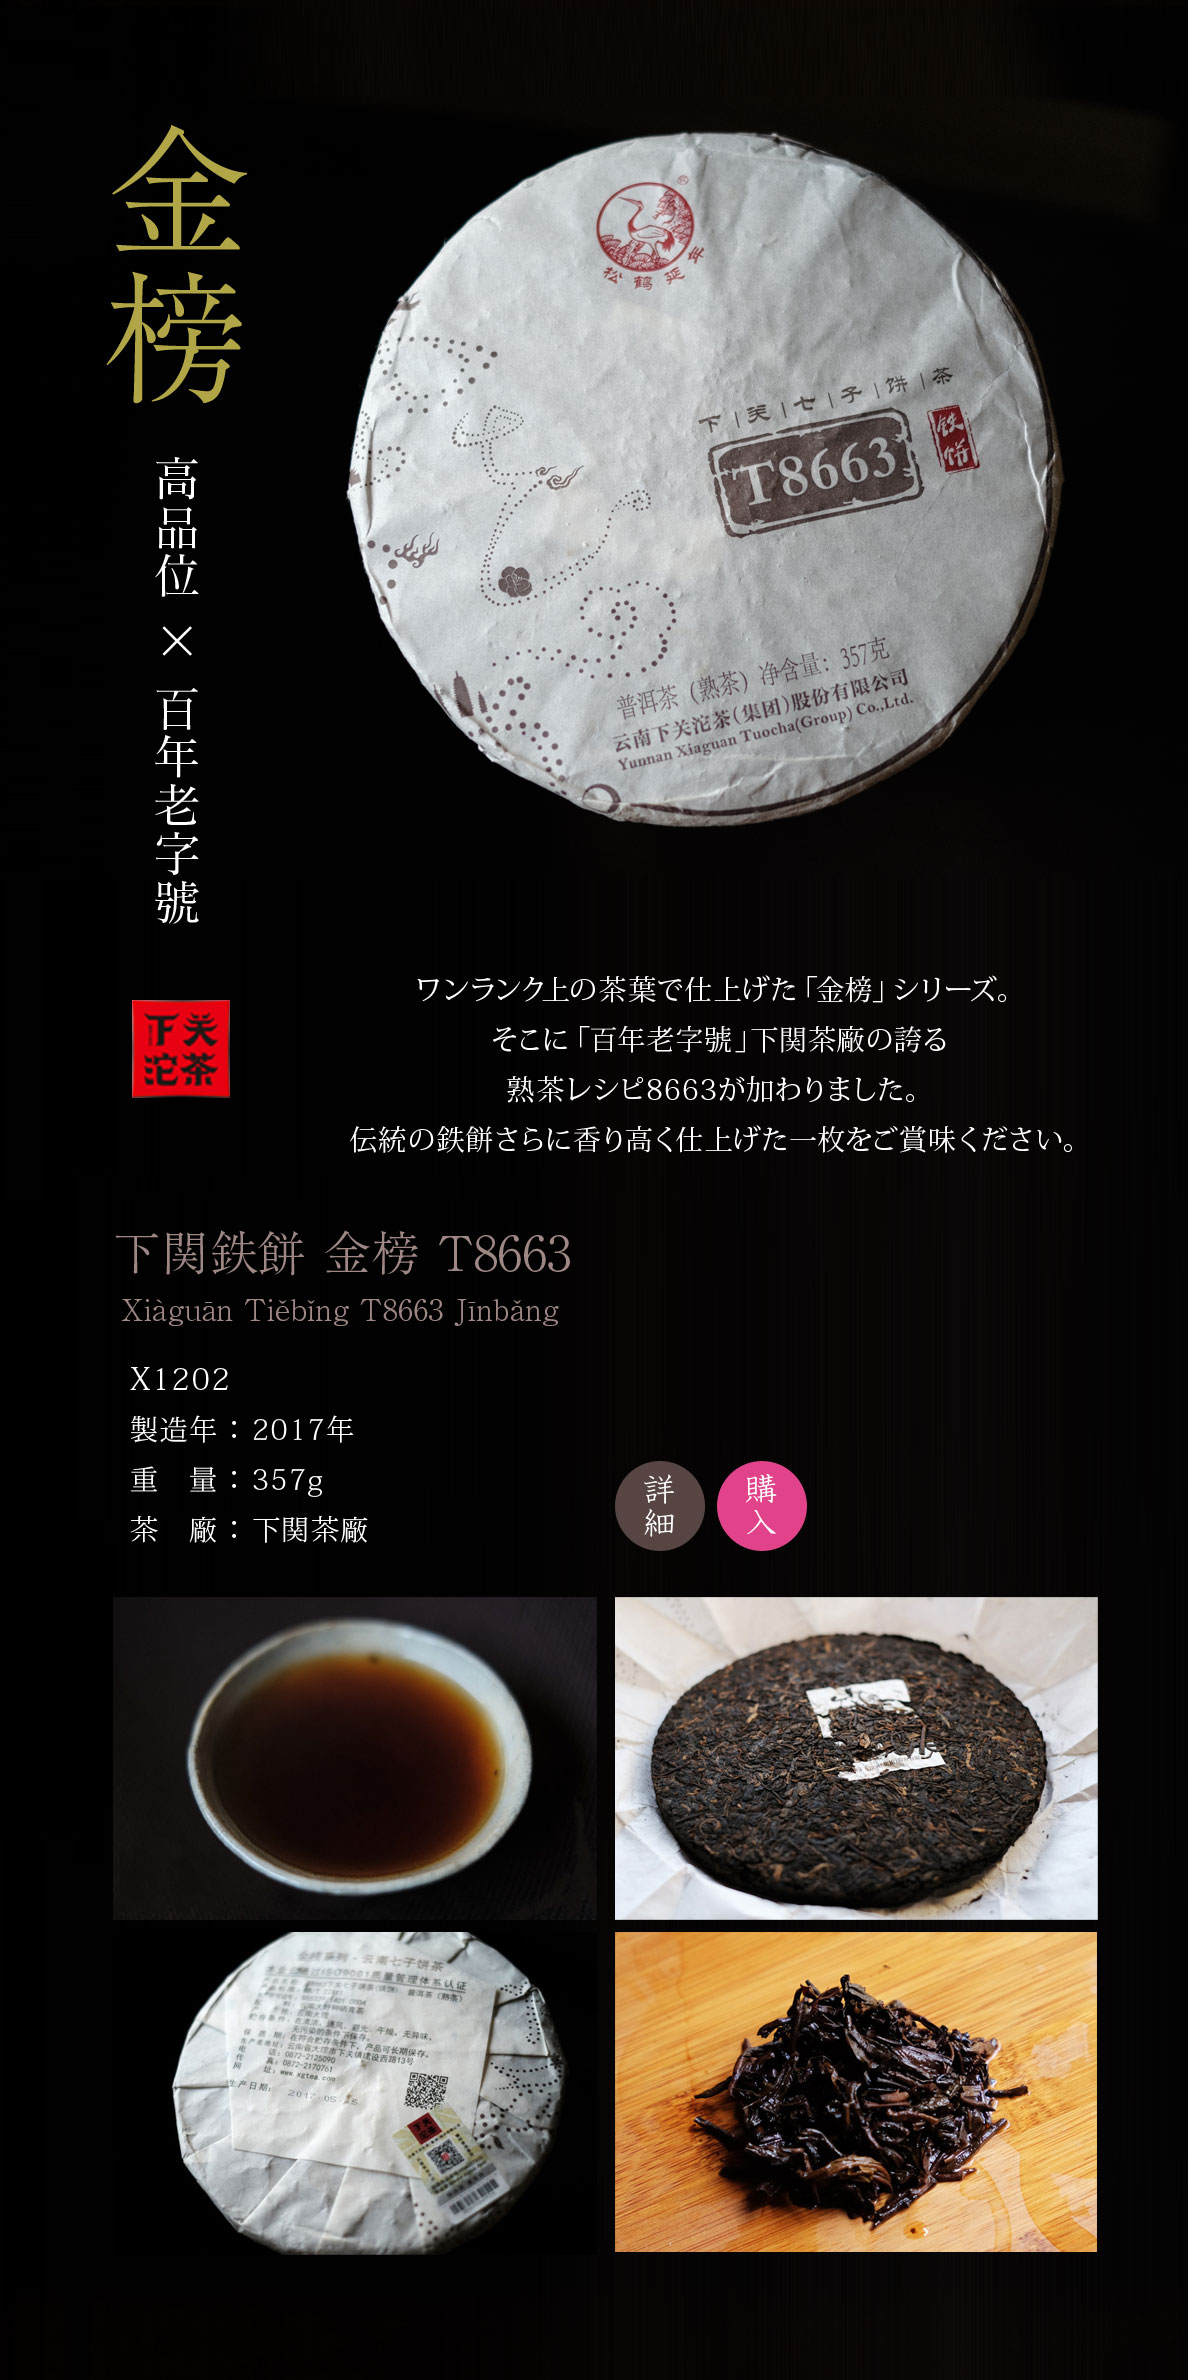 ワンランク上の茶葉で仕上げた「金榜」シリーズ。そこに「百年老字號」下関茶廠の誇る熟茶レシピ8663が加わりました。伝統の鉄餅さらに香り高く仕上げた一枚をご賞味ください。